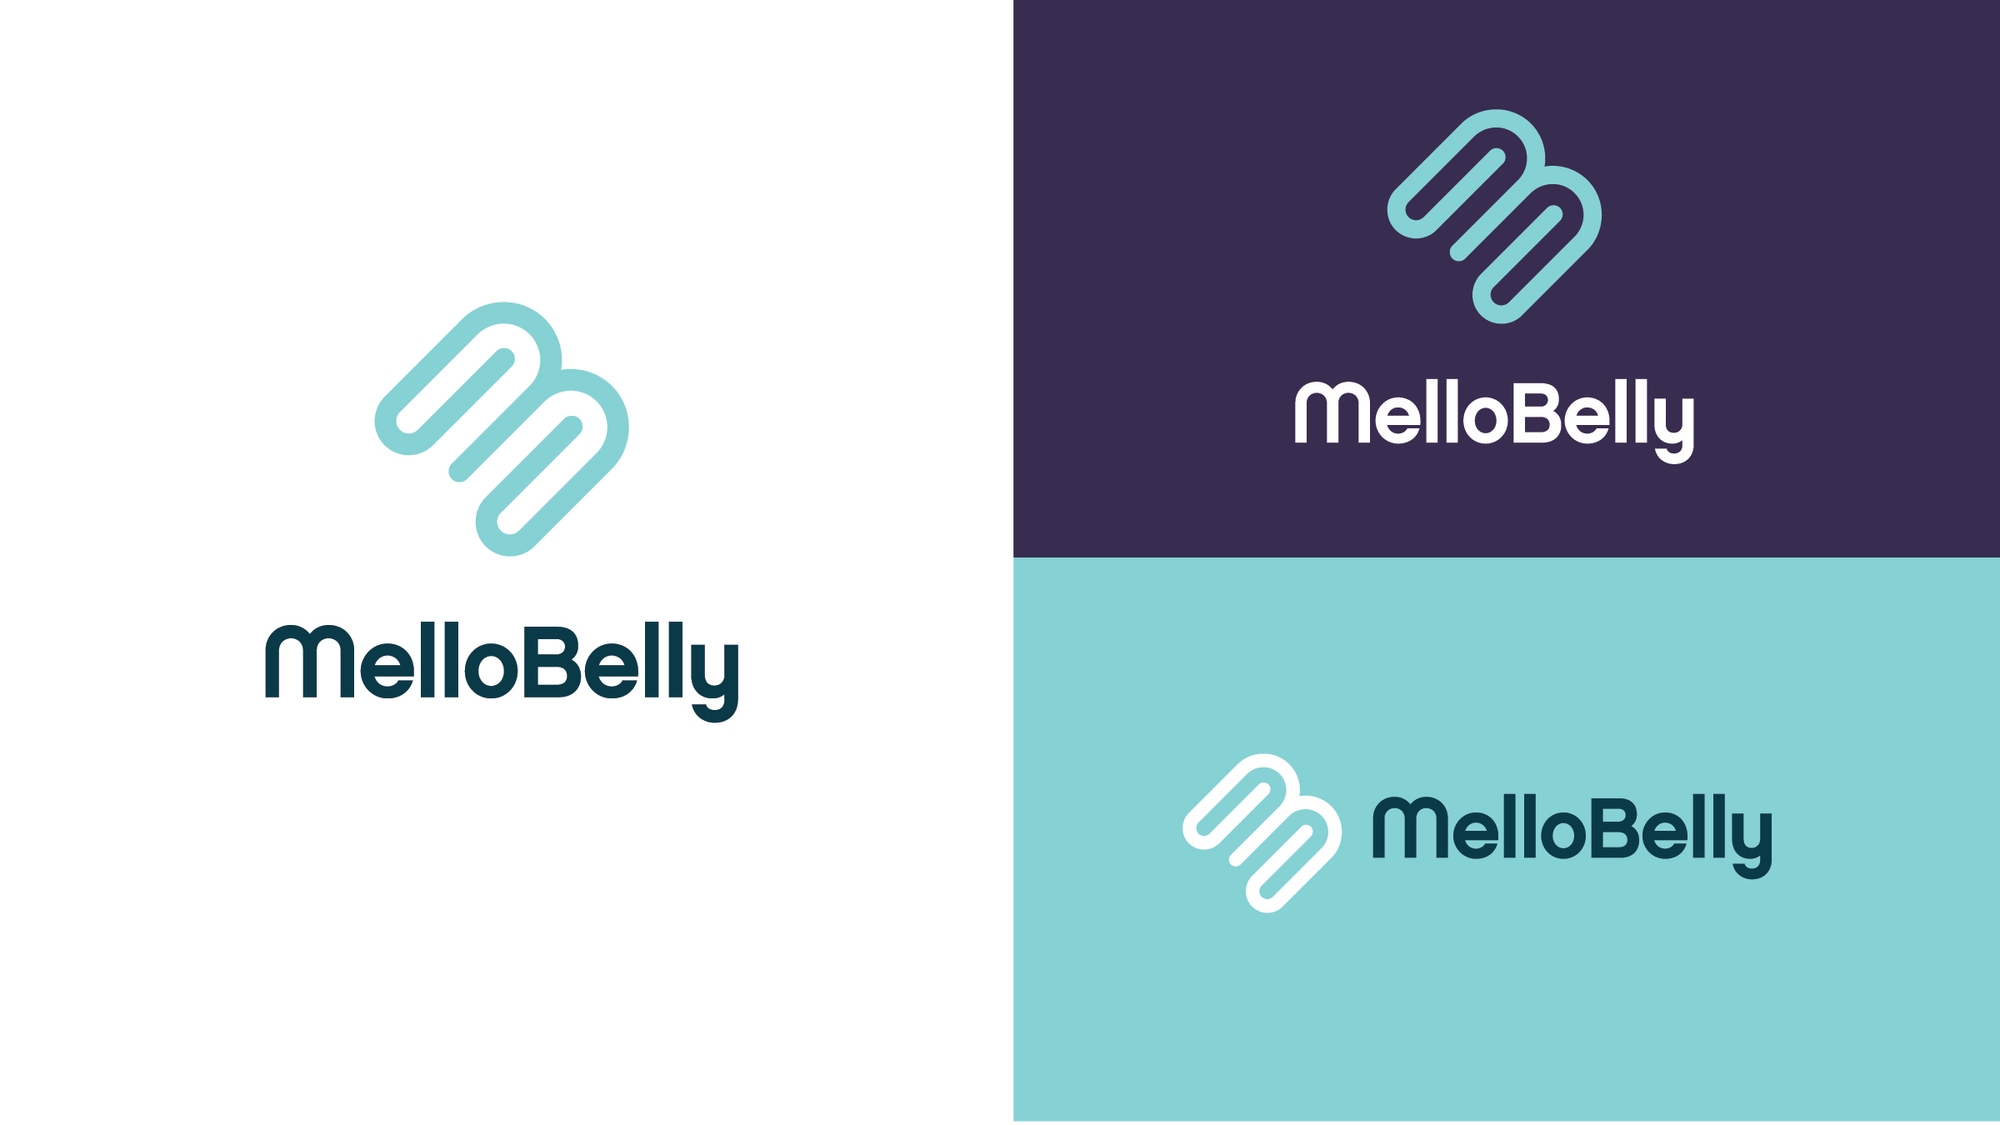 MelloBelly 3-up logo